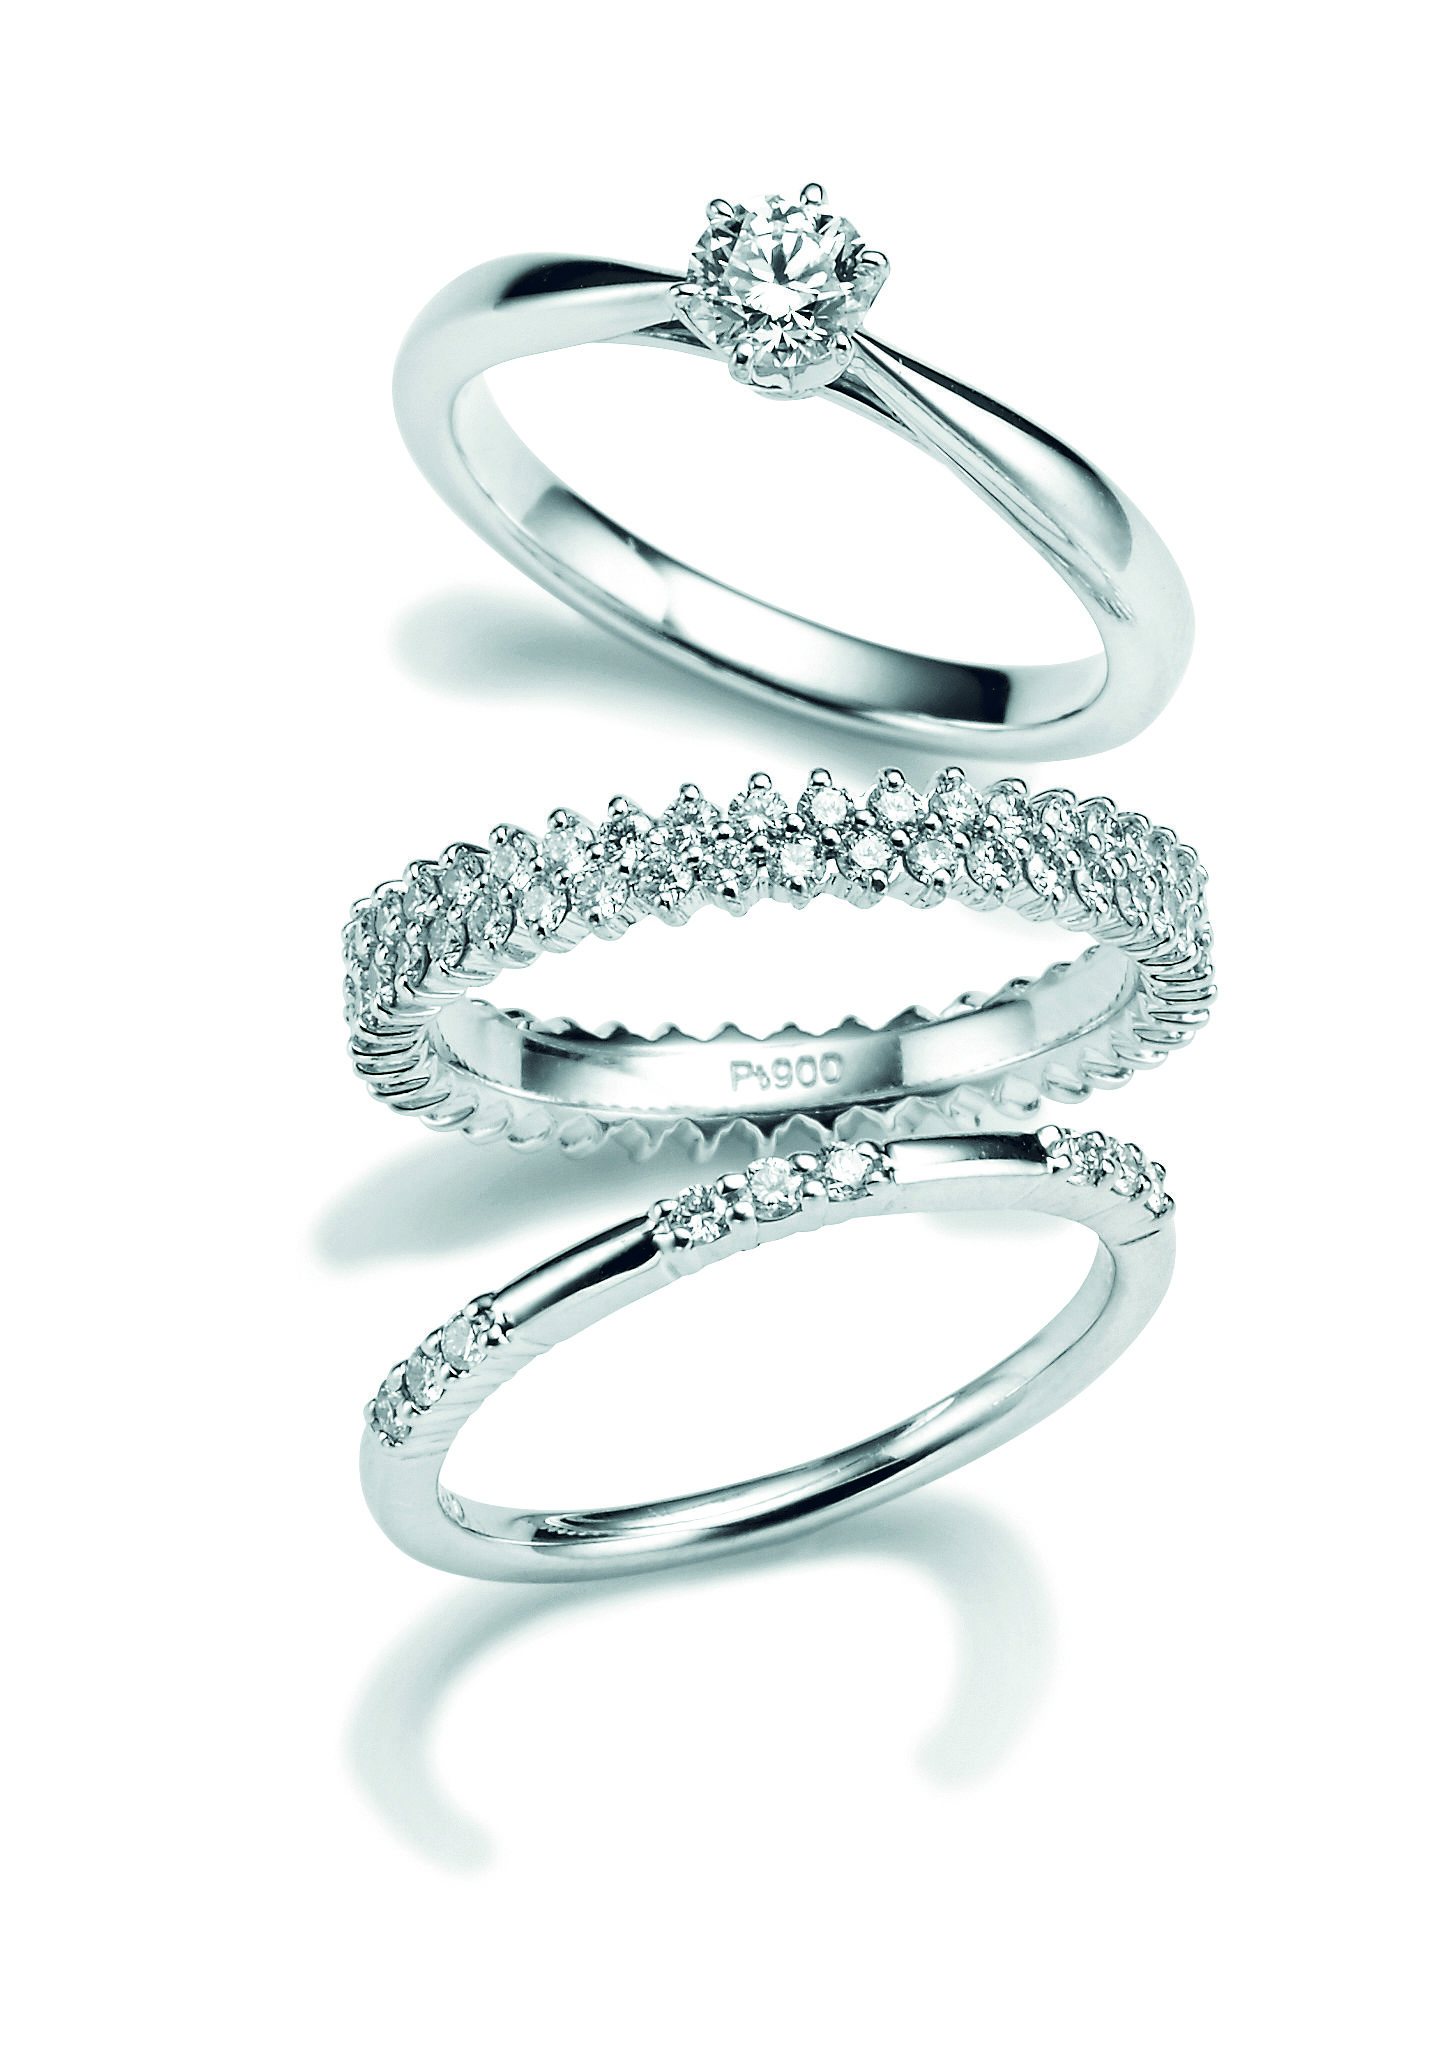 結婚指輪 婚約指輪がおしゃれな日本のジュエリーブランド12選 Elle Mariage エル マリアージュ